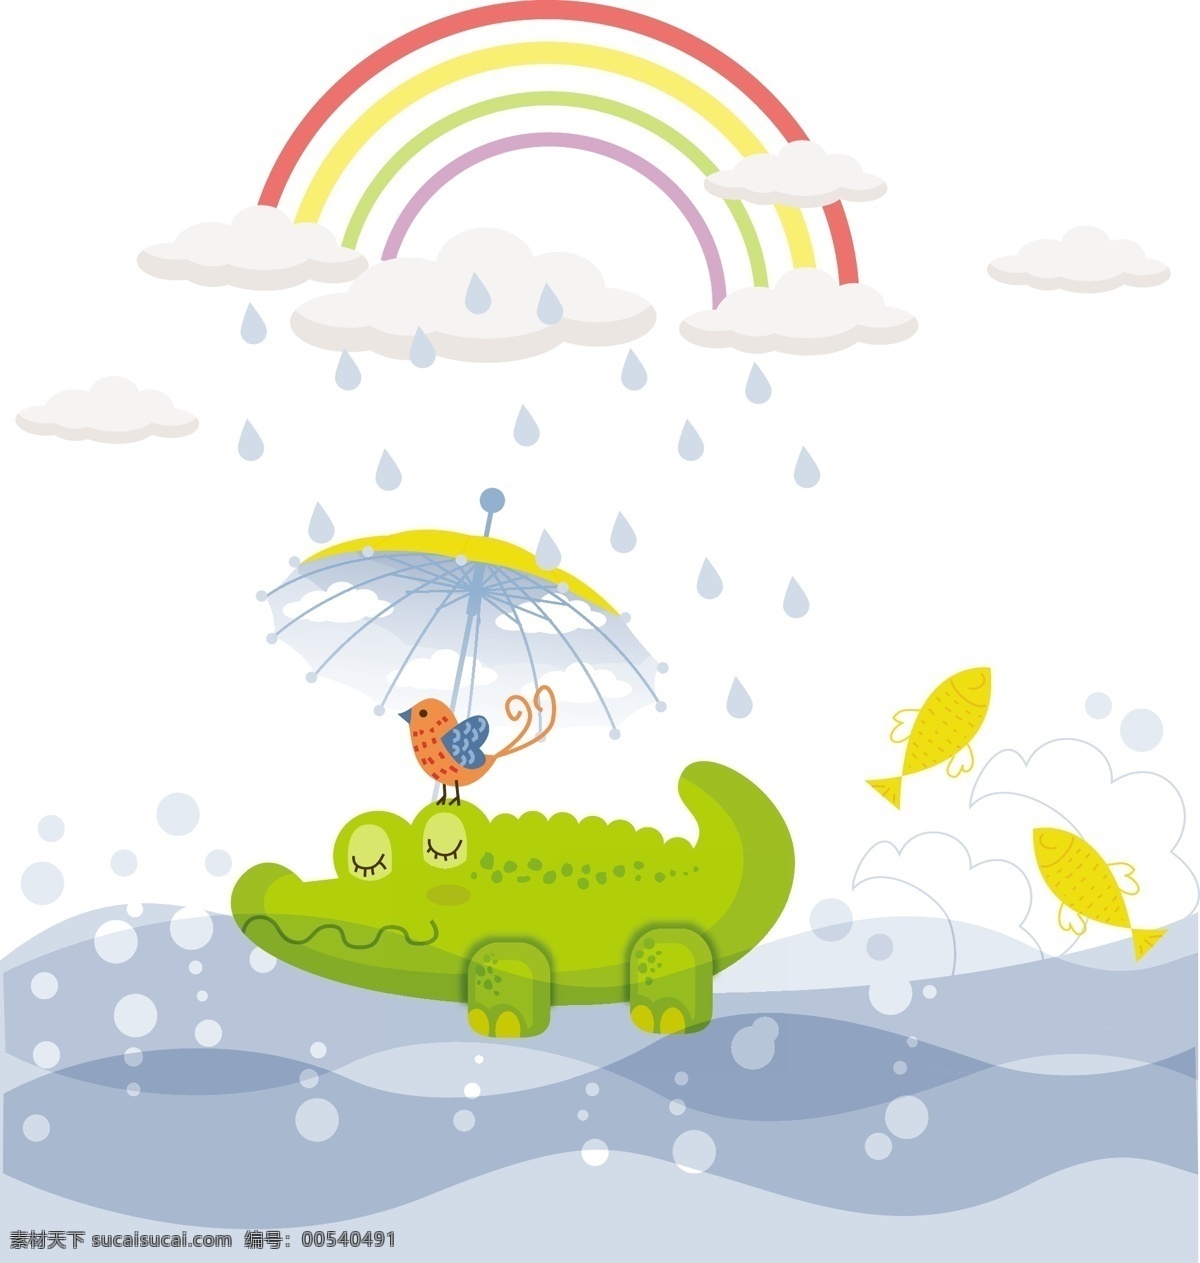 童趣 绿色 鳄鱼 插画 卡通鳄鱼 河流里的鳄鱼 雨滴卡通 彩虹 童趣鳄鱼插画 卡通设计